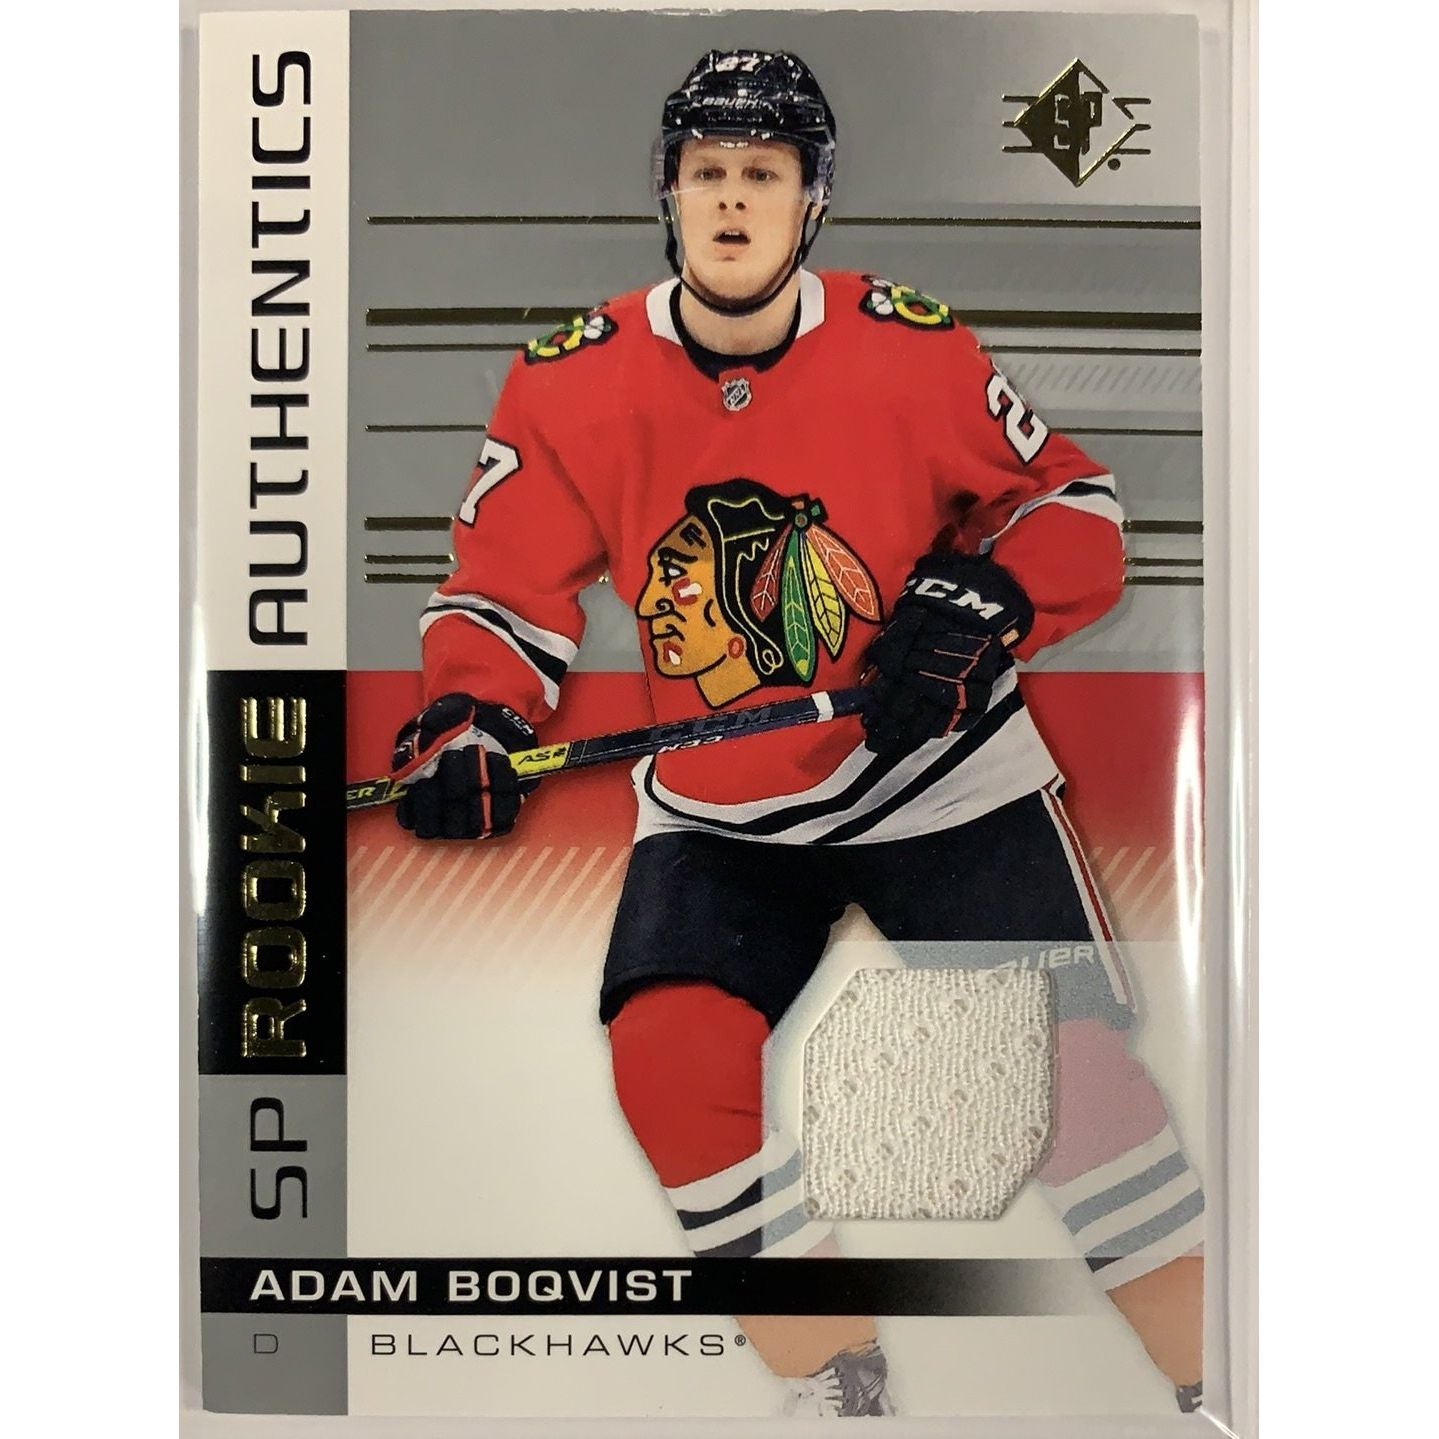  2019-20 SP Adam Boqvist Rookie Authentics Jersey Patch  Local Legends Cards & Collectibles